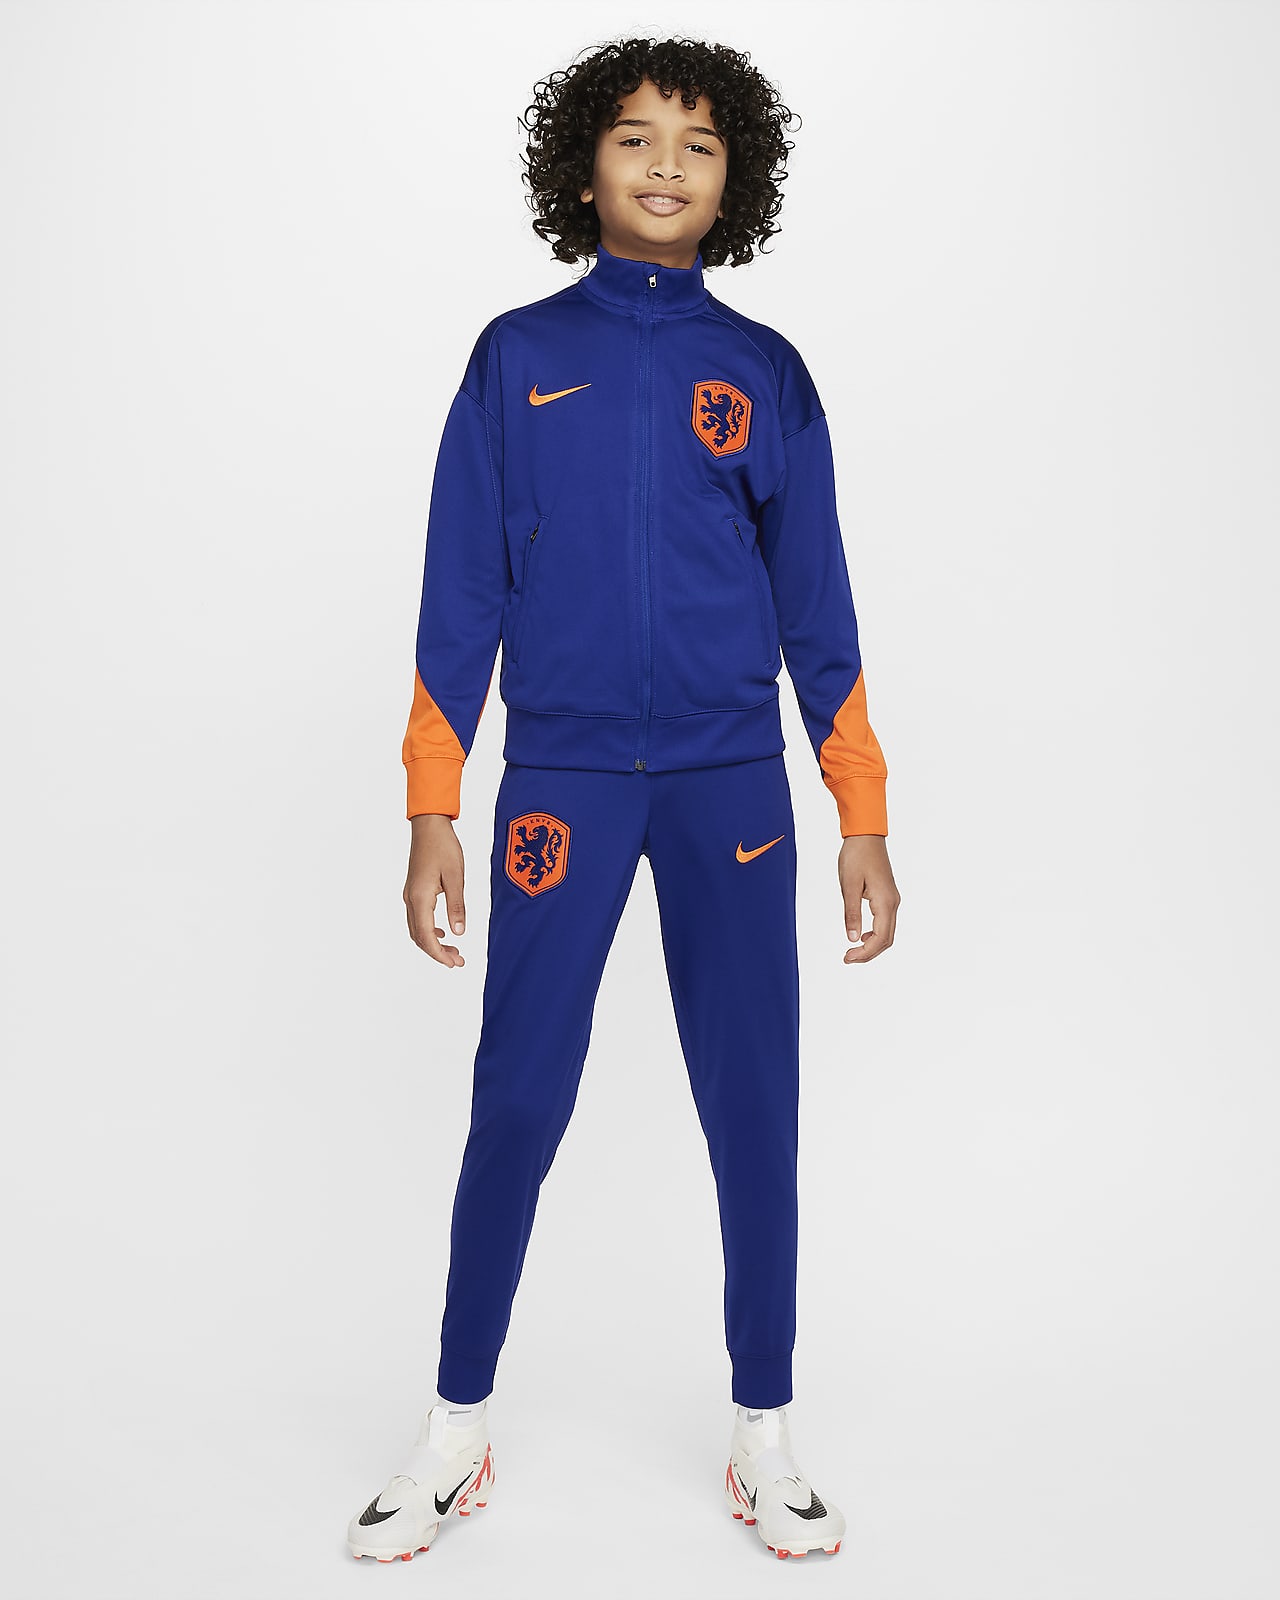 Hollandia Strike Nike Dri-FIT kötött futballtréningruha nagyobb gyerekeknek